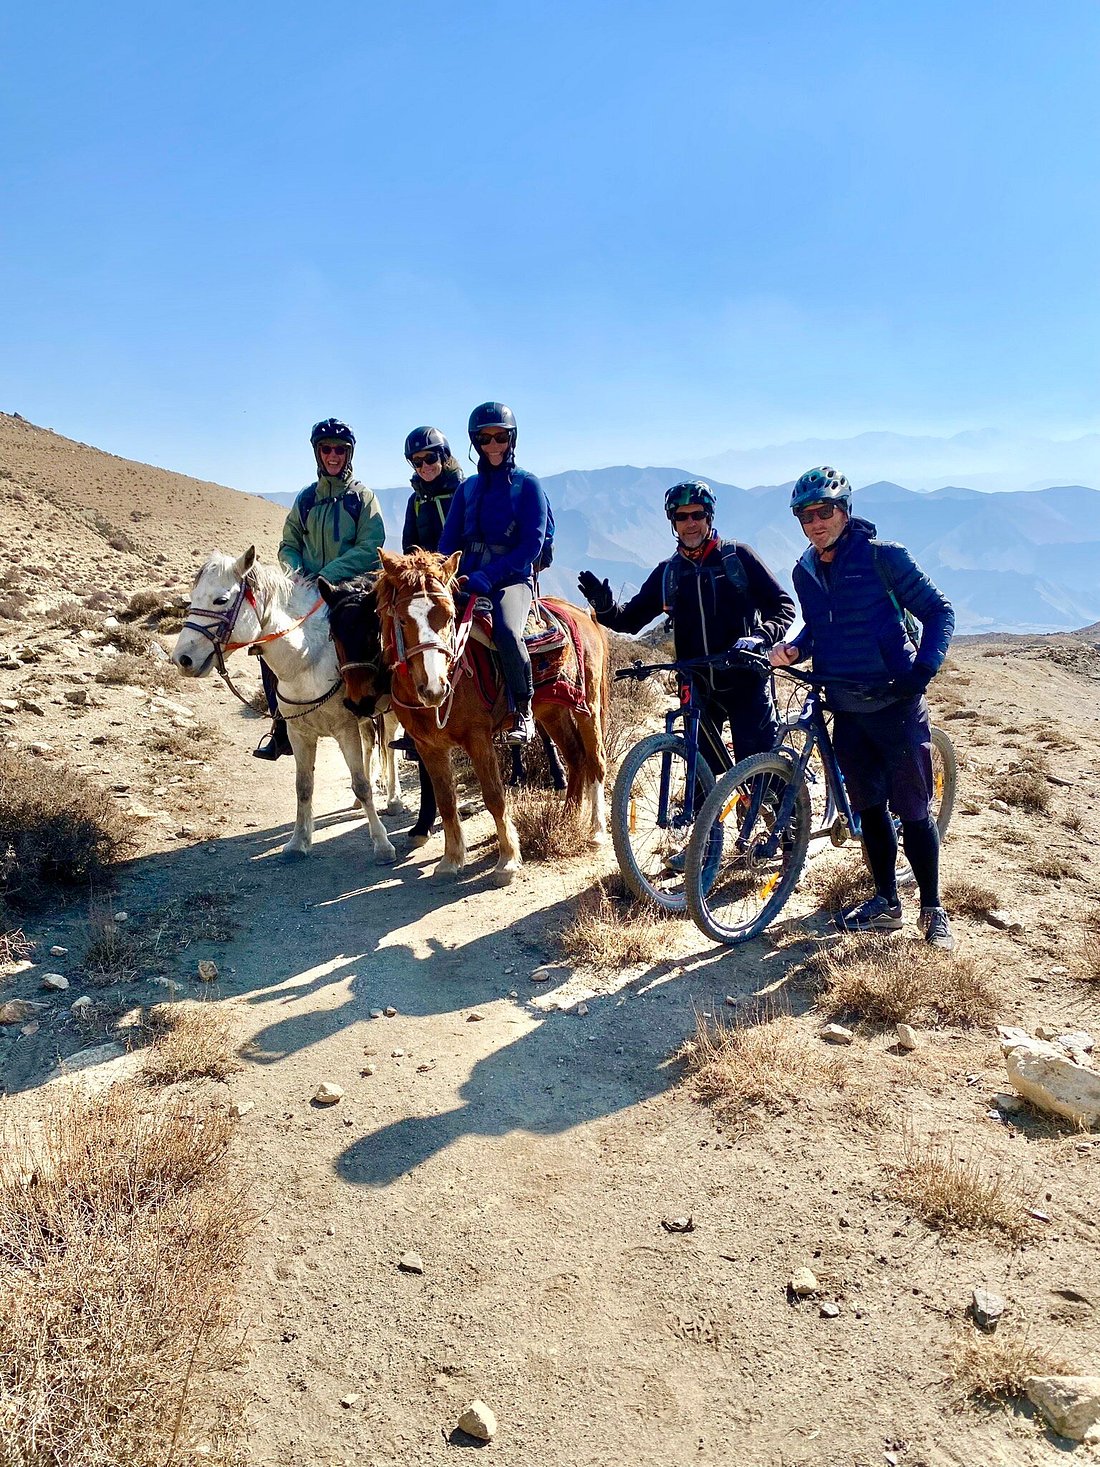 Upper Mustang horse riding, mountain biking and walking trek. Amazing.